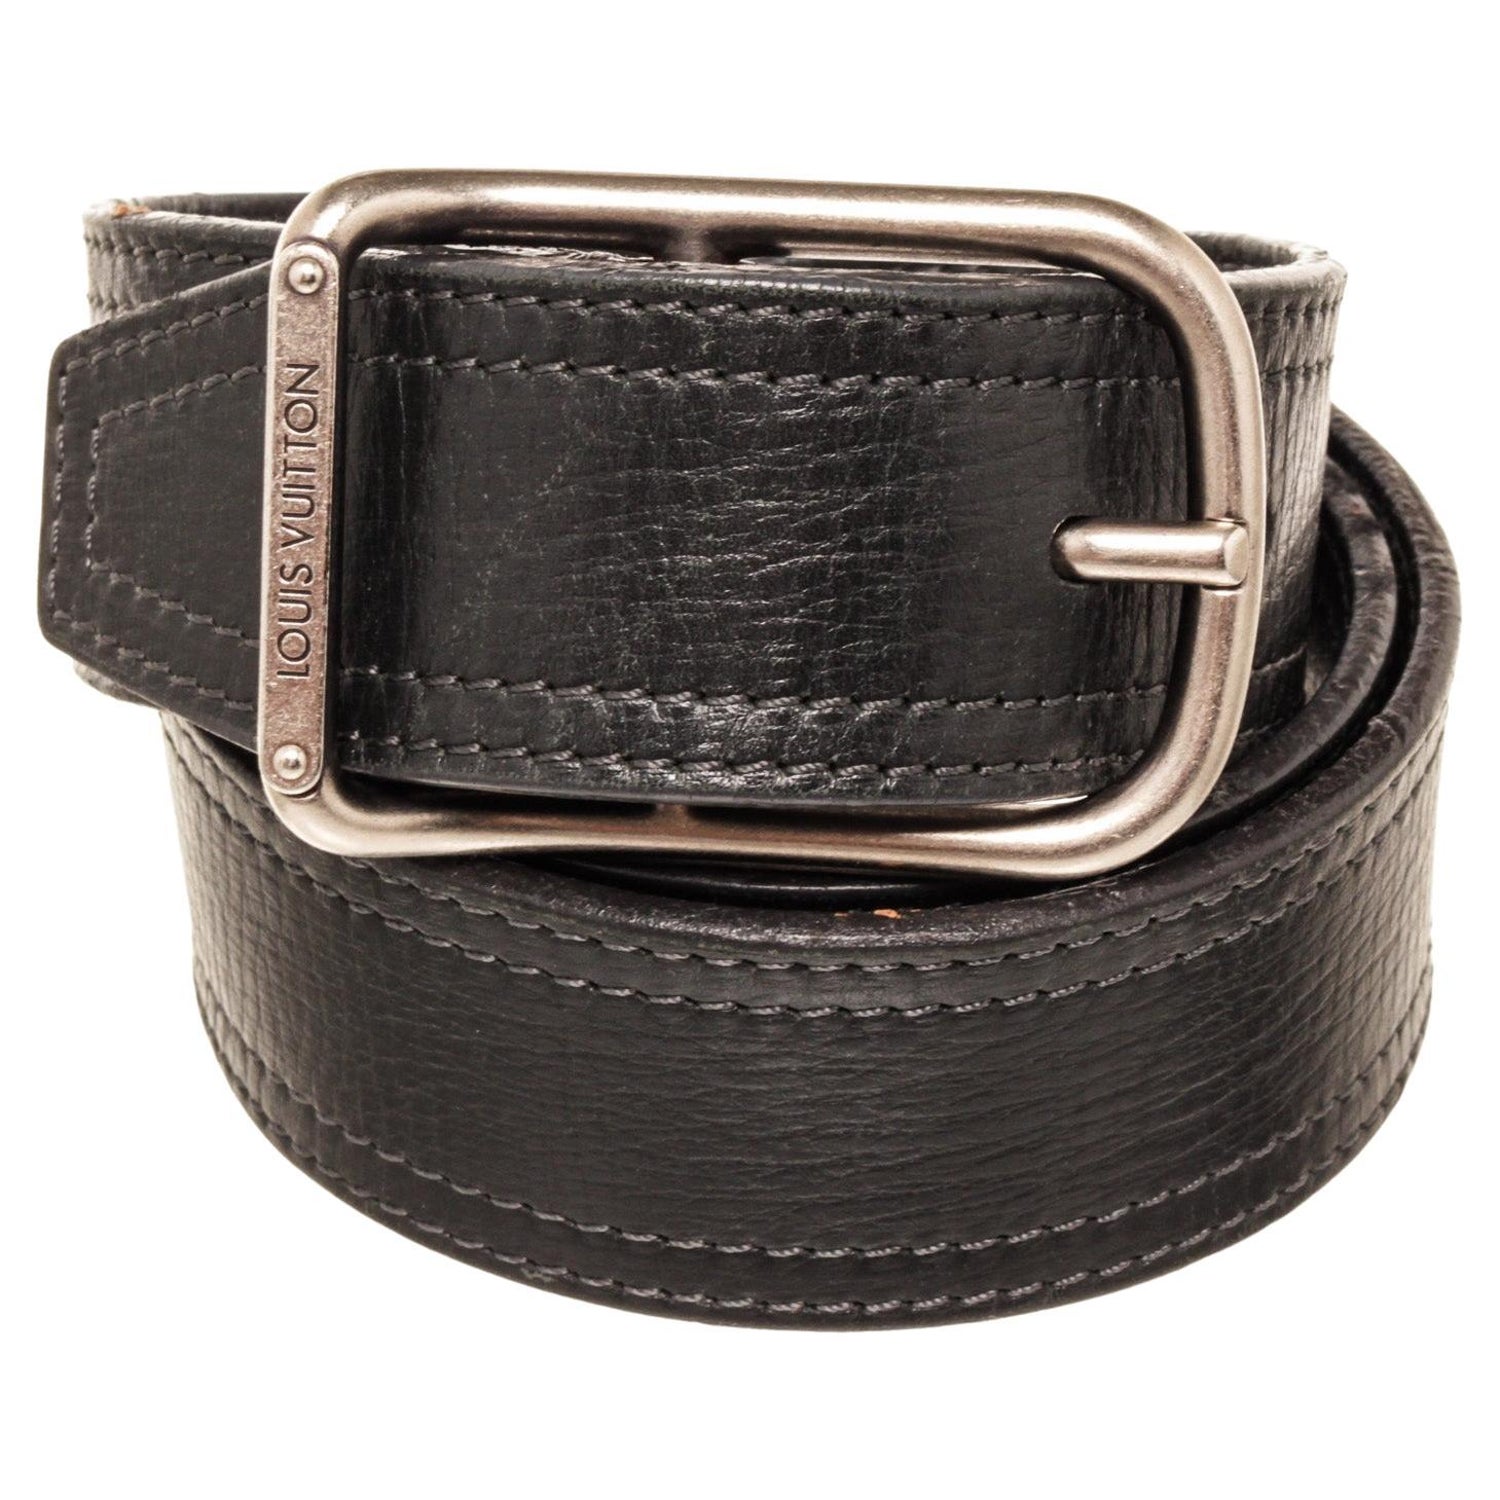 Louis Vuitton - Authenticated Initiales Belt - Leather Black Plain for Men, Good Condition